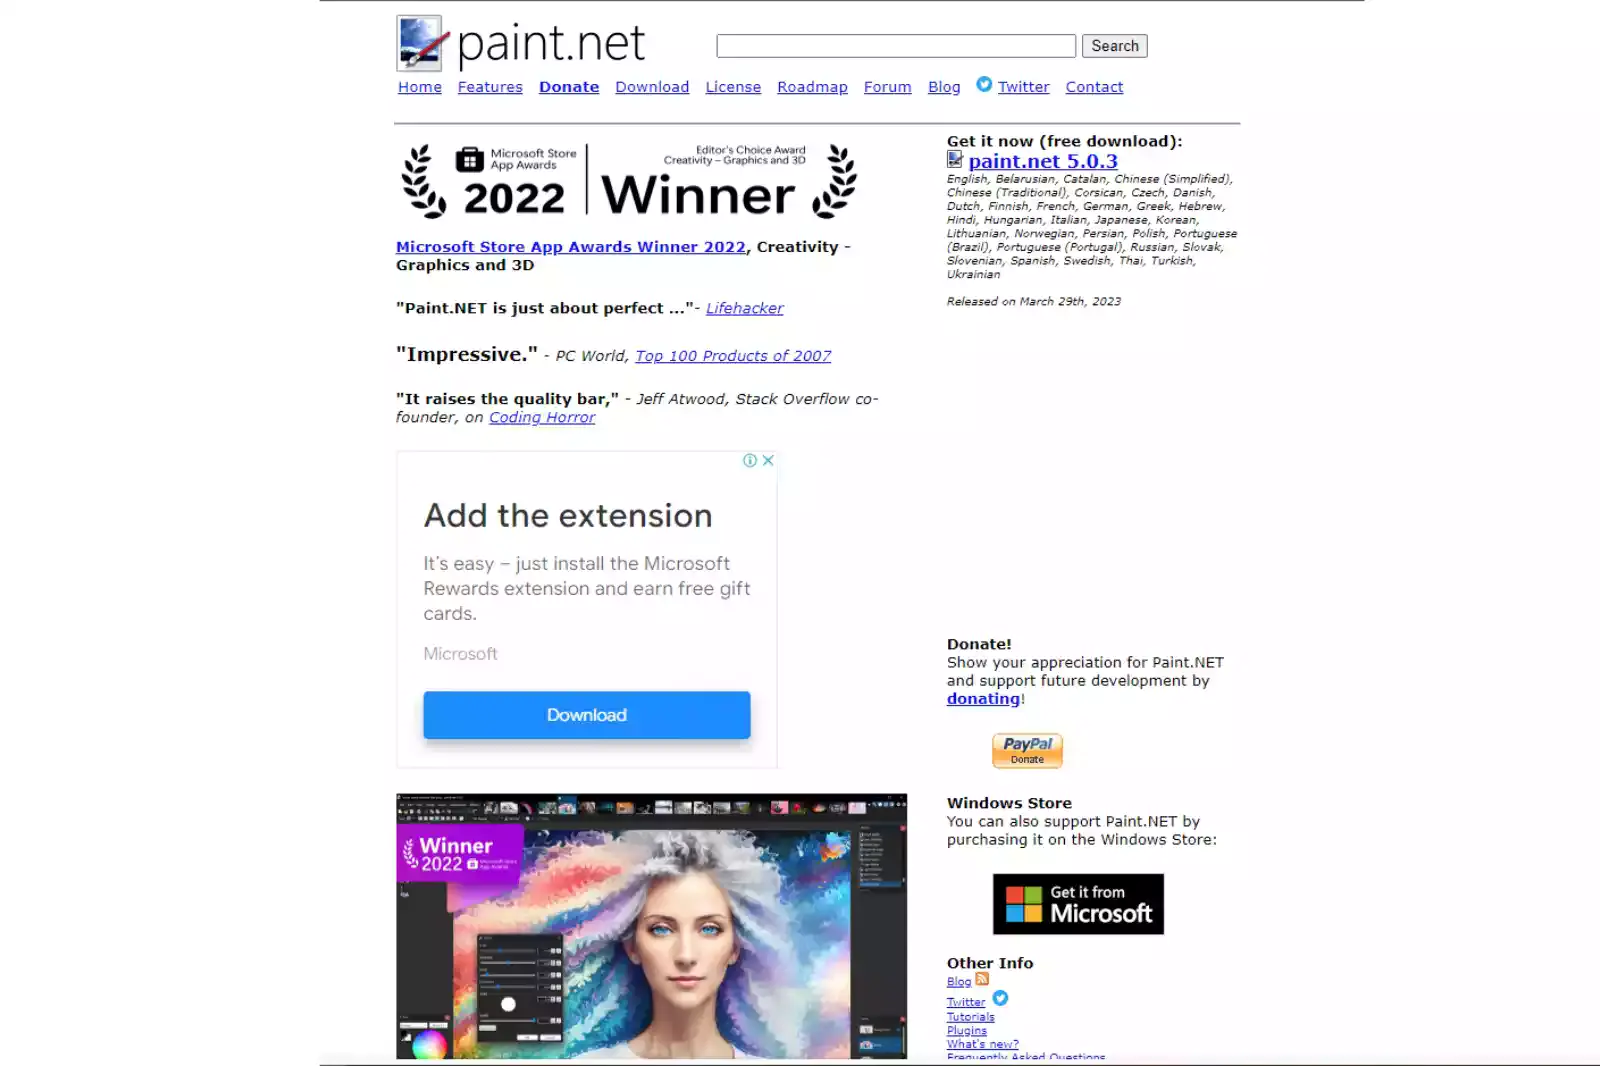 5. Paint.net